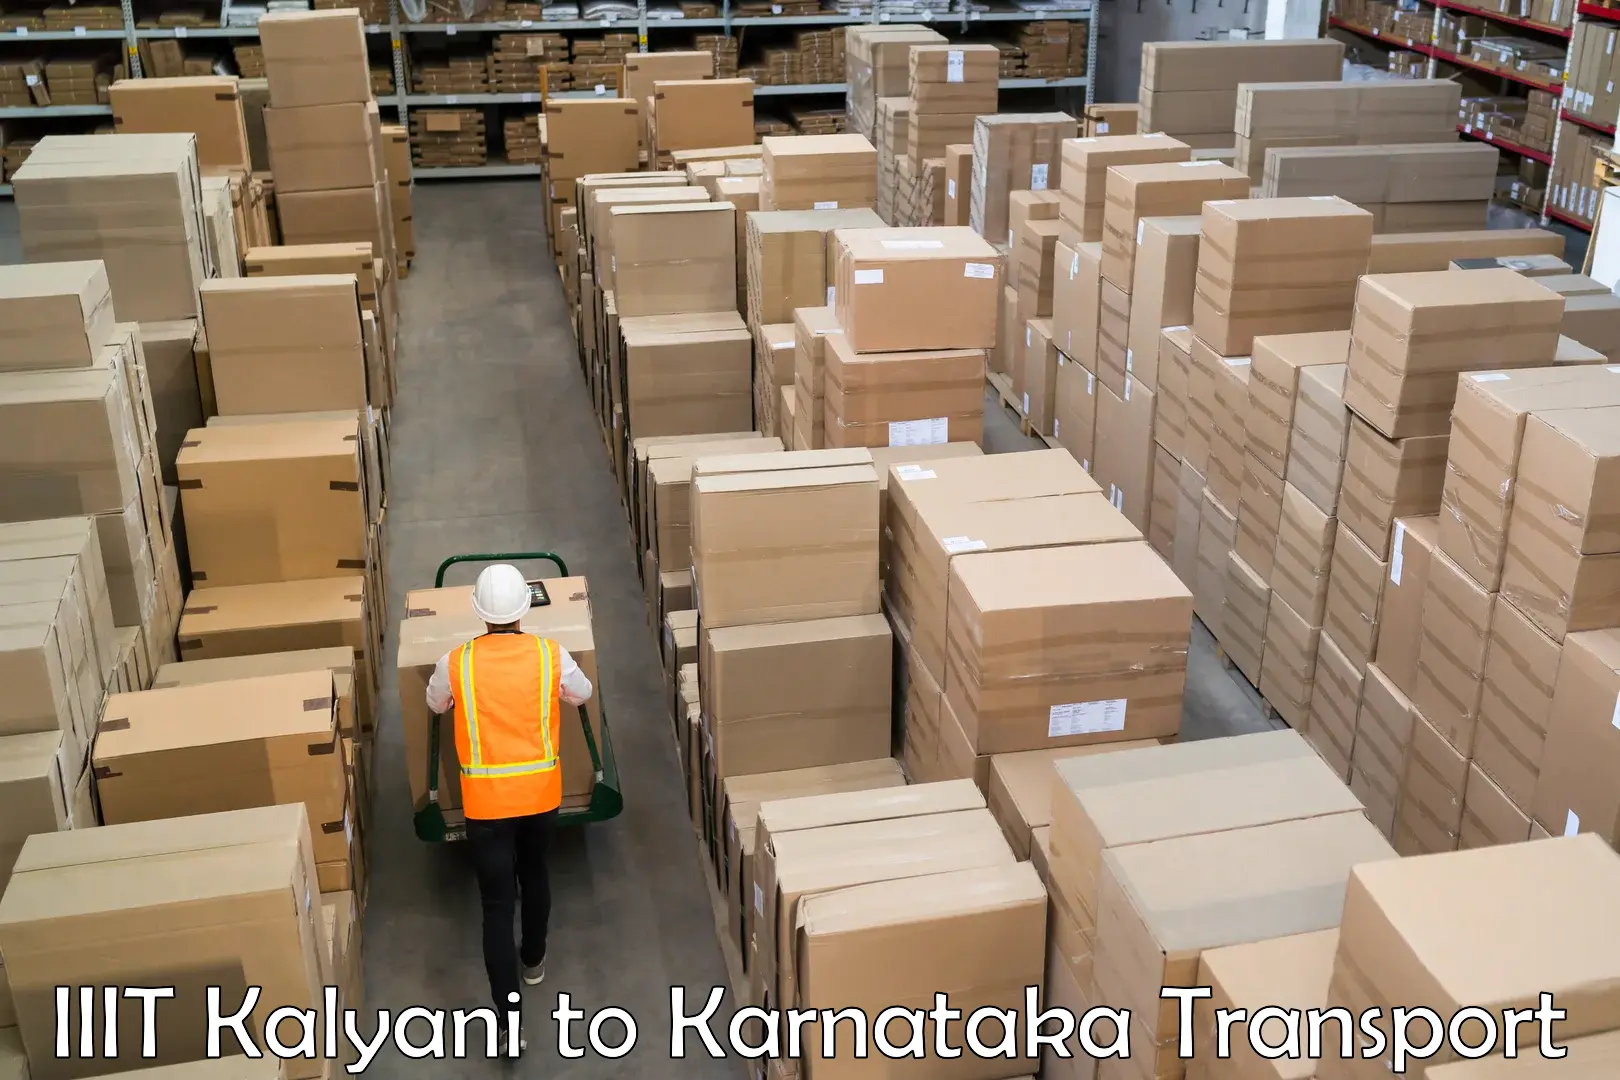 Container transportation services IIIT Kalyani to Ballari